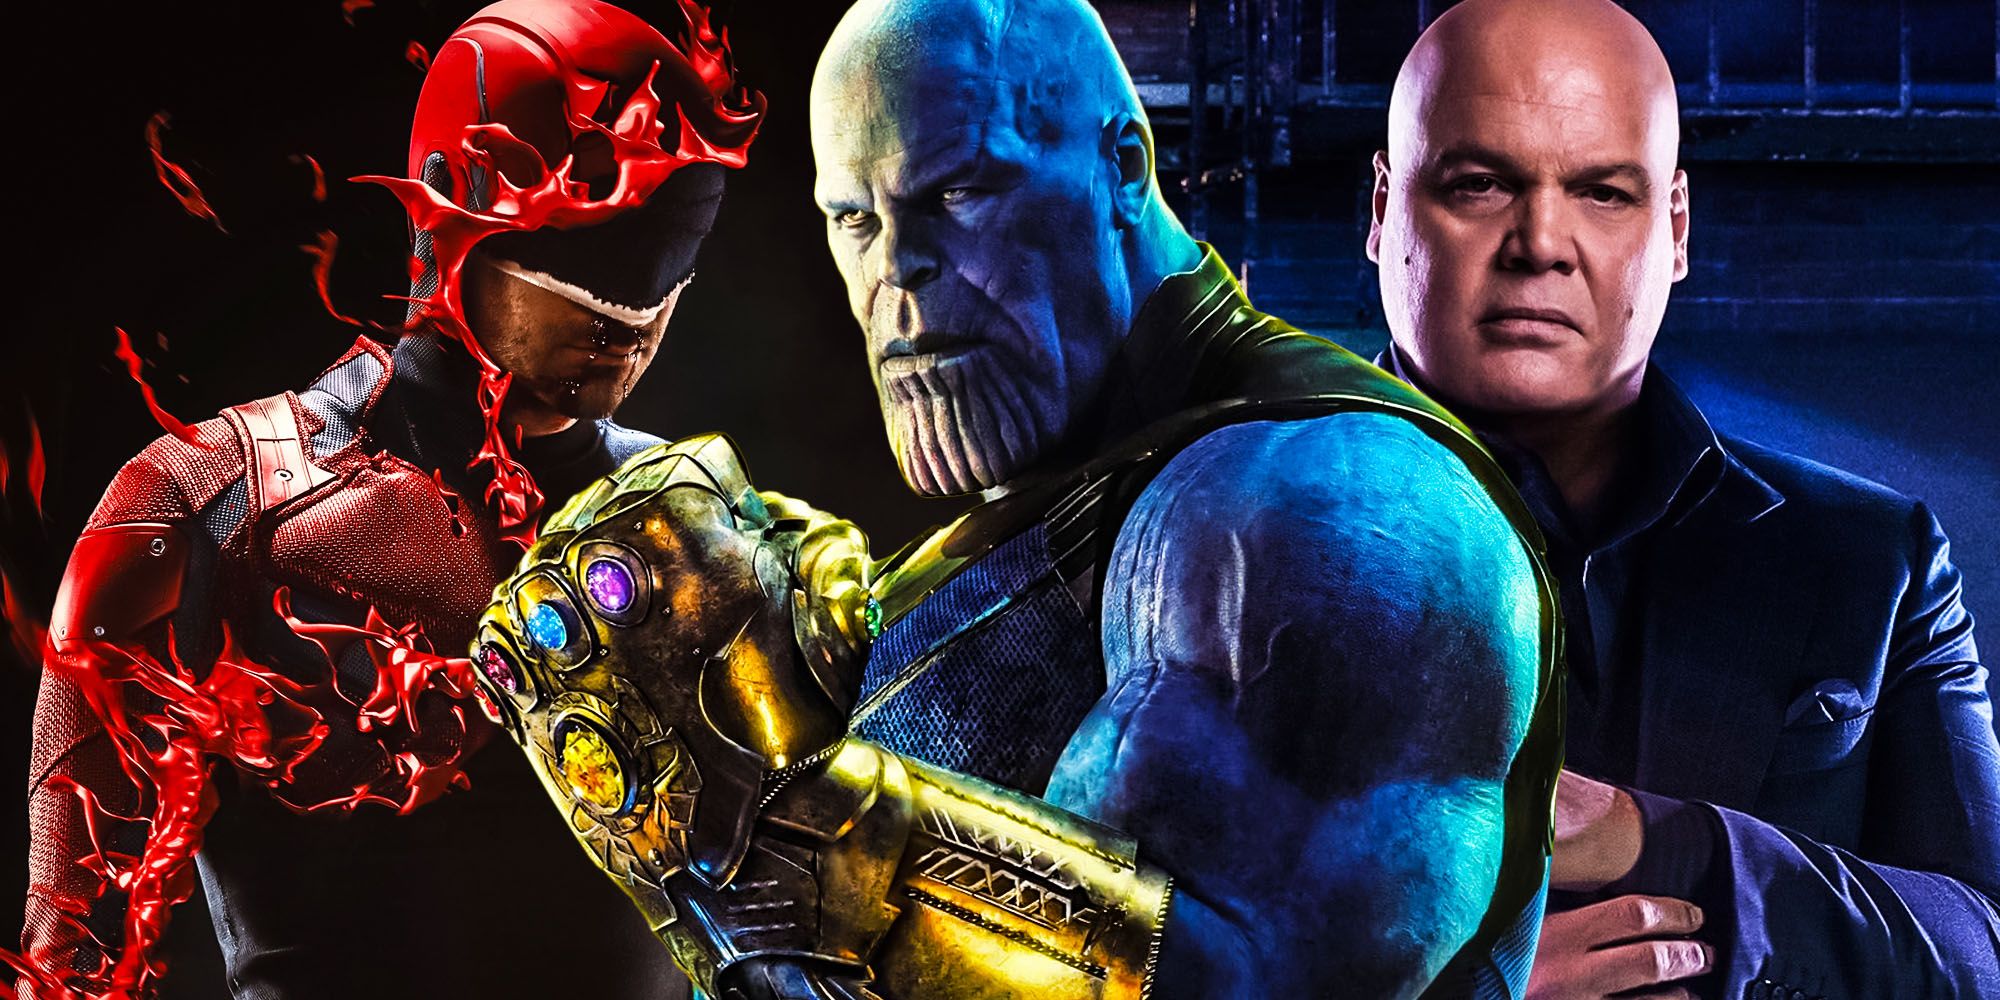 El chasquido de Thanos puede explicar el Daredevil y Kingpin Retcon de MCU